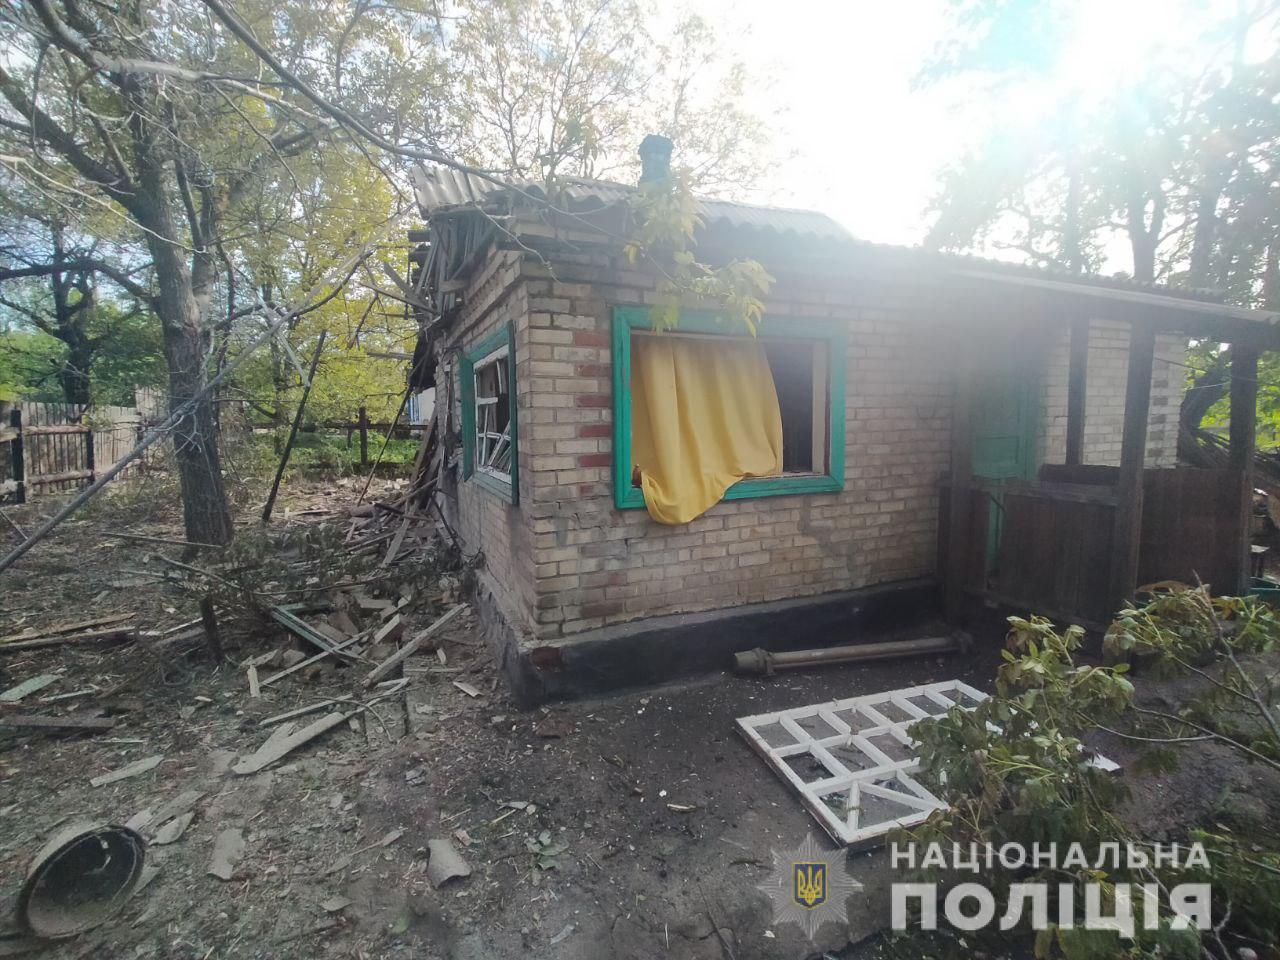 Трое мирных жителей Донецкой области погибли 14 мая. Под прицелом оказались 11 населенных пунктов, — полиция (ФОТО) 7